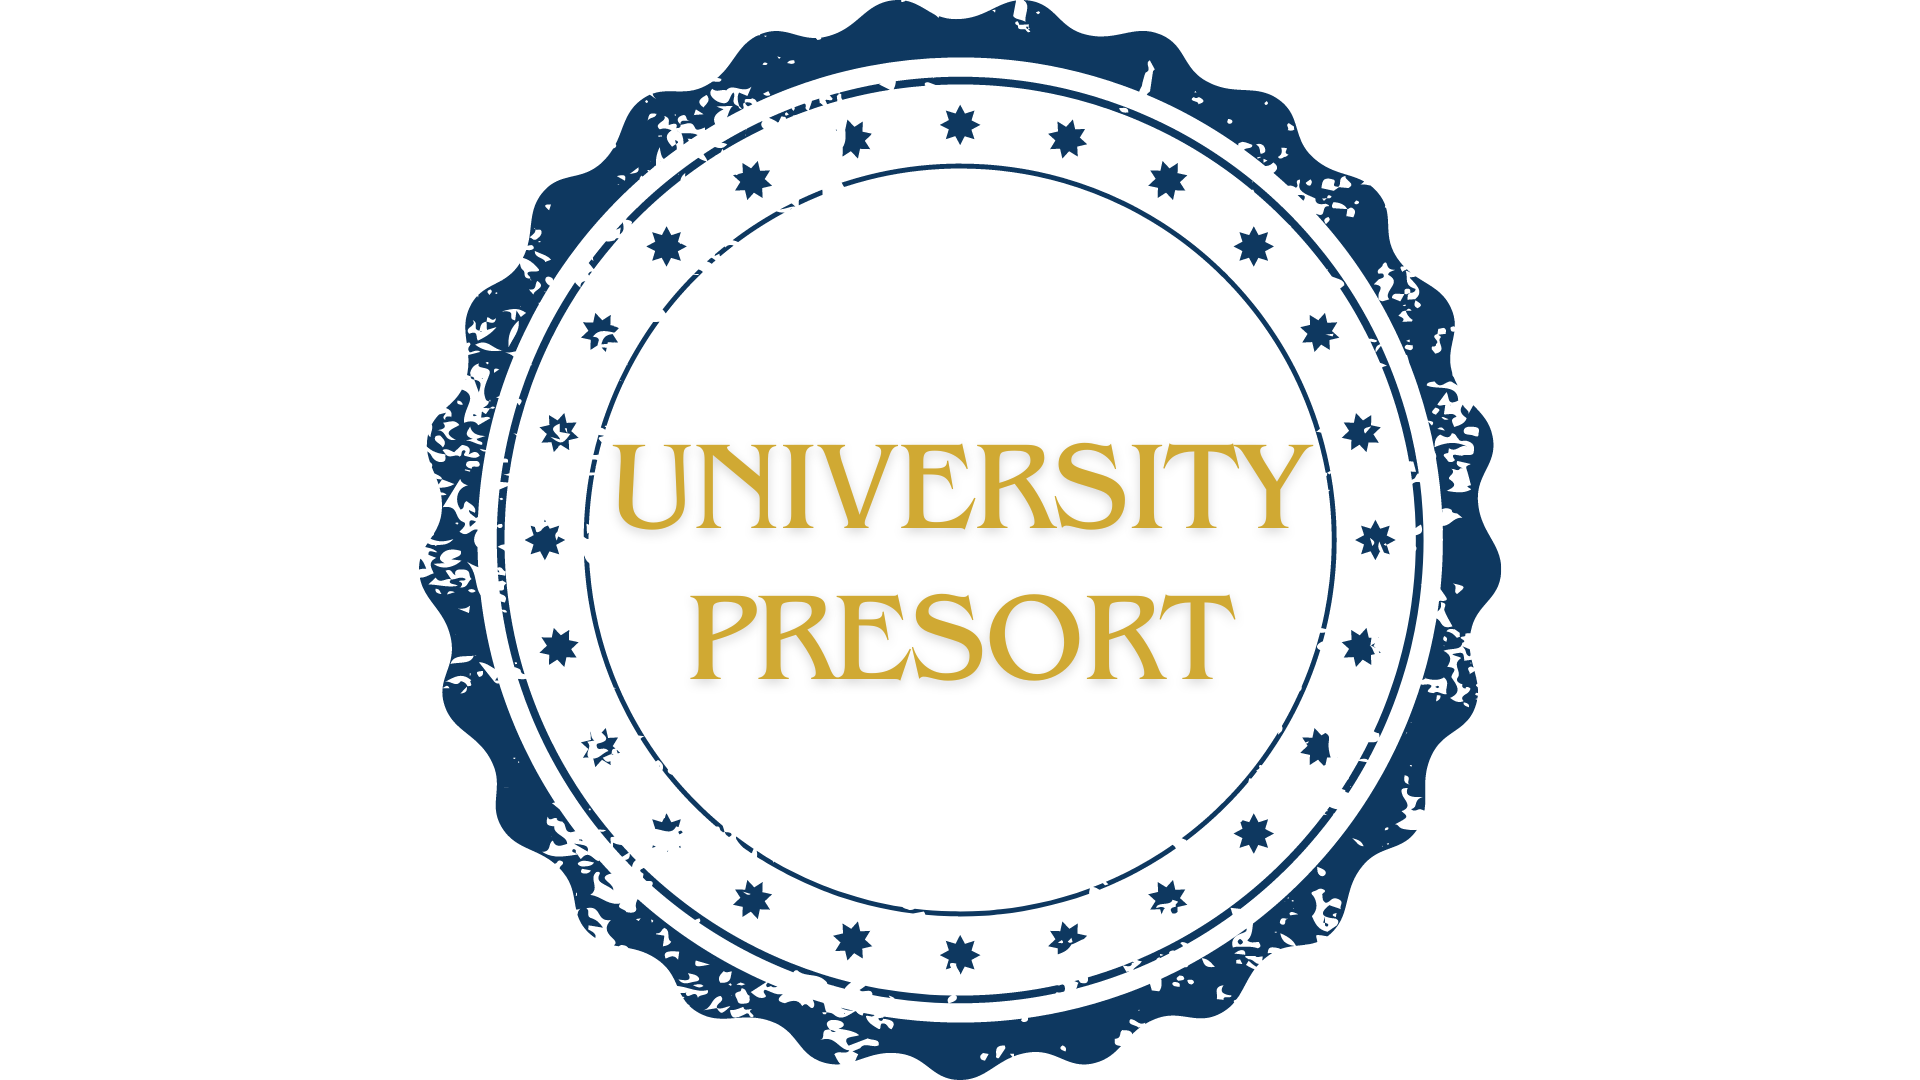 University Presort logo